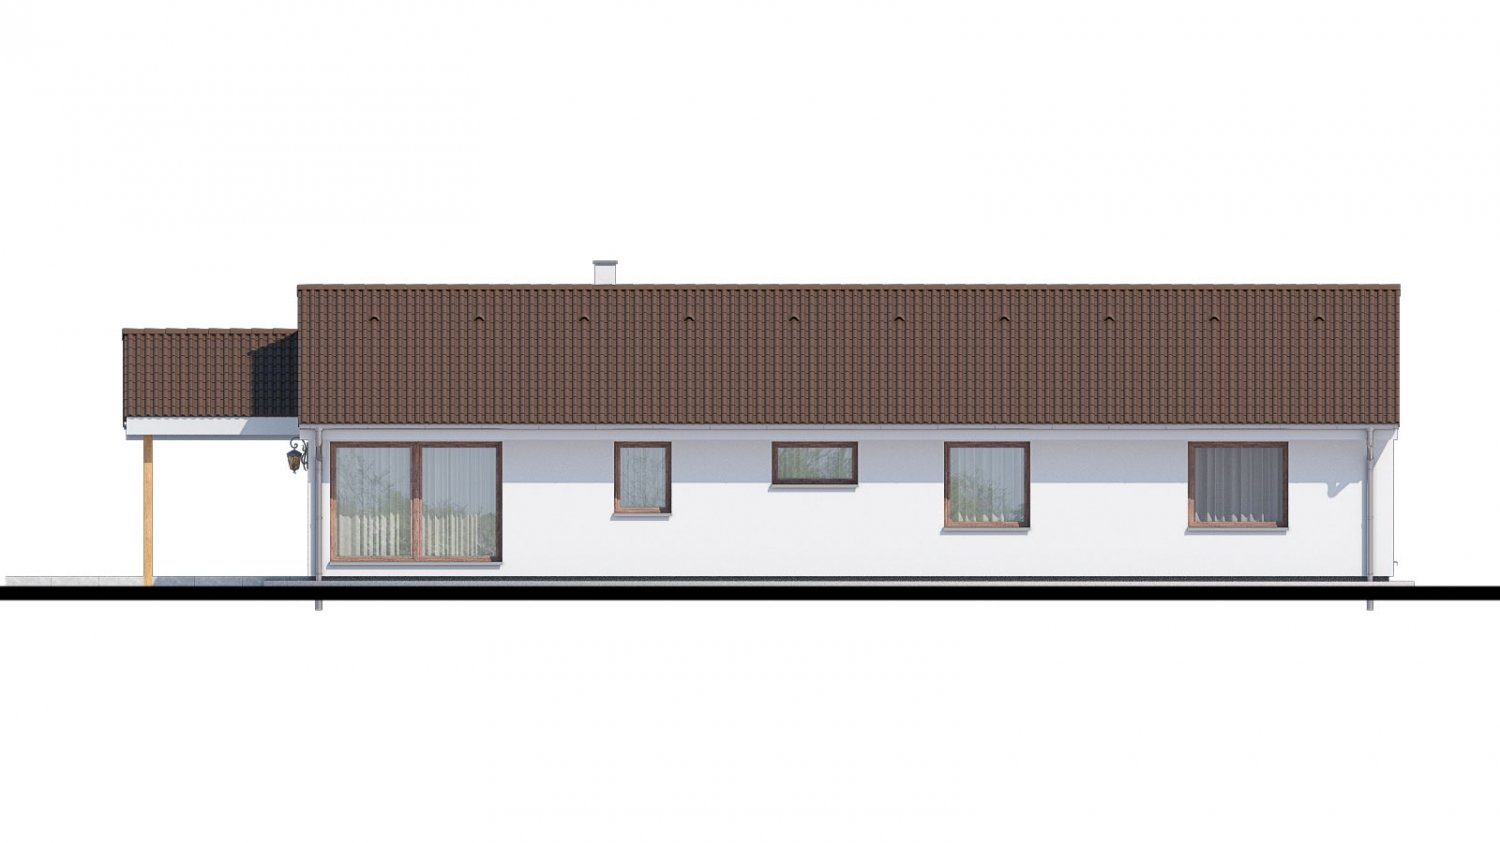 Zrkadlový pohľad 3. - Top projekt 2019 rodinného domu se sedlovou střechou. Zpracovaný ve virtuální realitě se zařizováním.